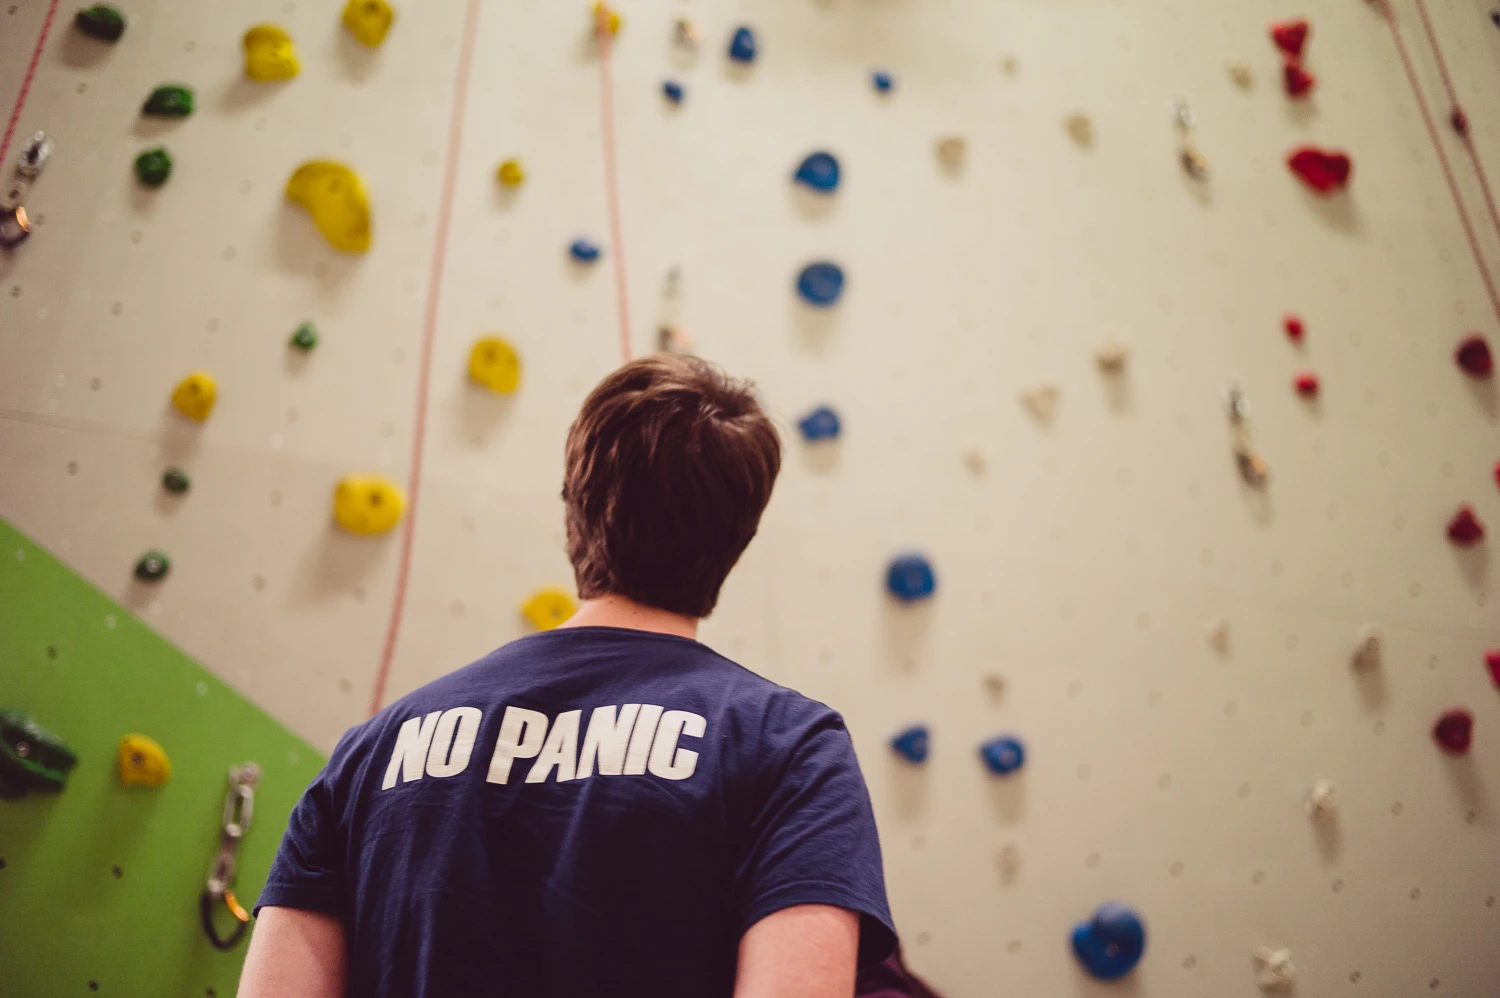 Foto einer Person die eine Kletterwand hinaufschaut und ein T-Shirt mit der Aufschrift "No Panic" trägt